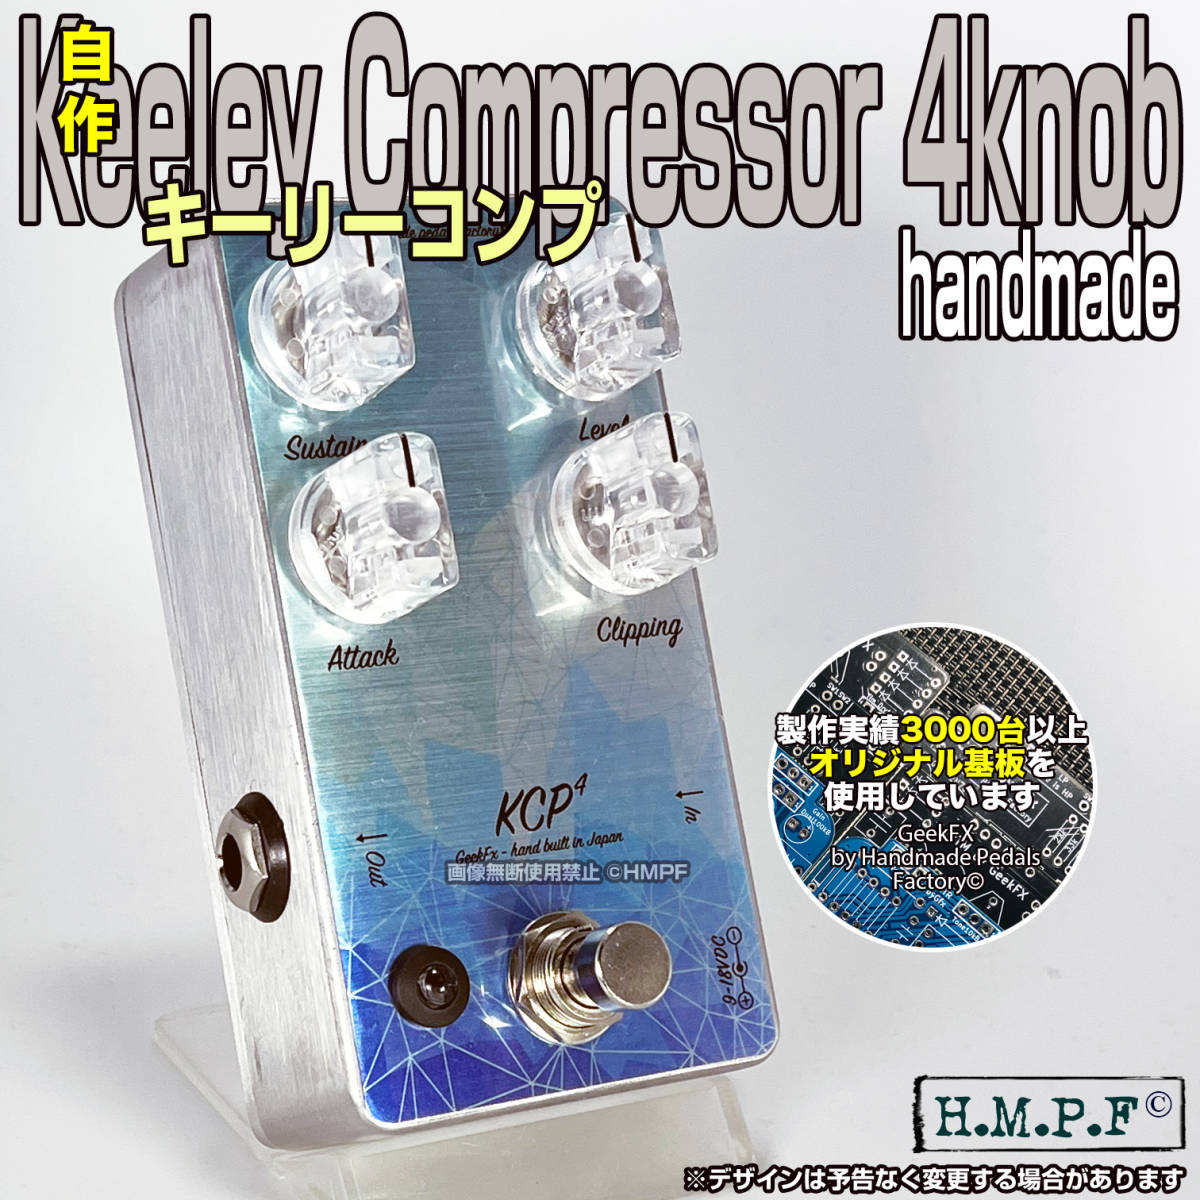 【送料無料】(KCP230396y)自作Keeley Compressor C4/9〜18V電源対応